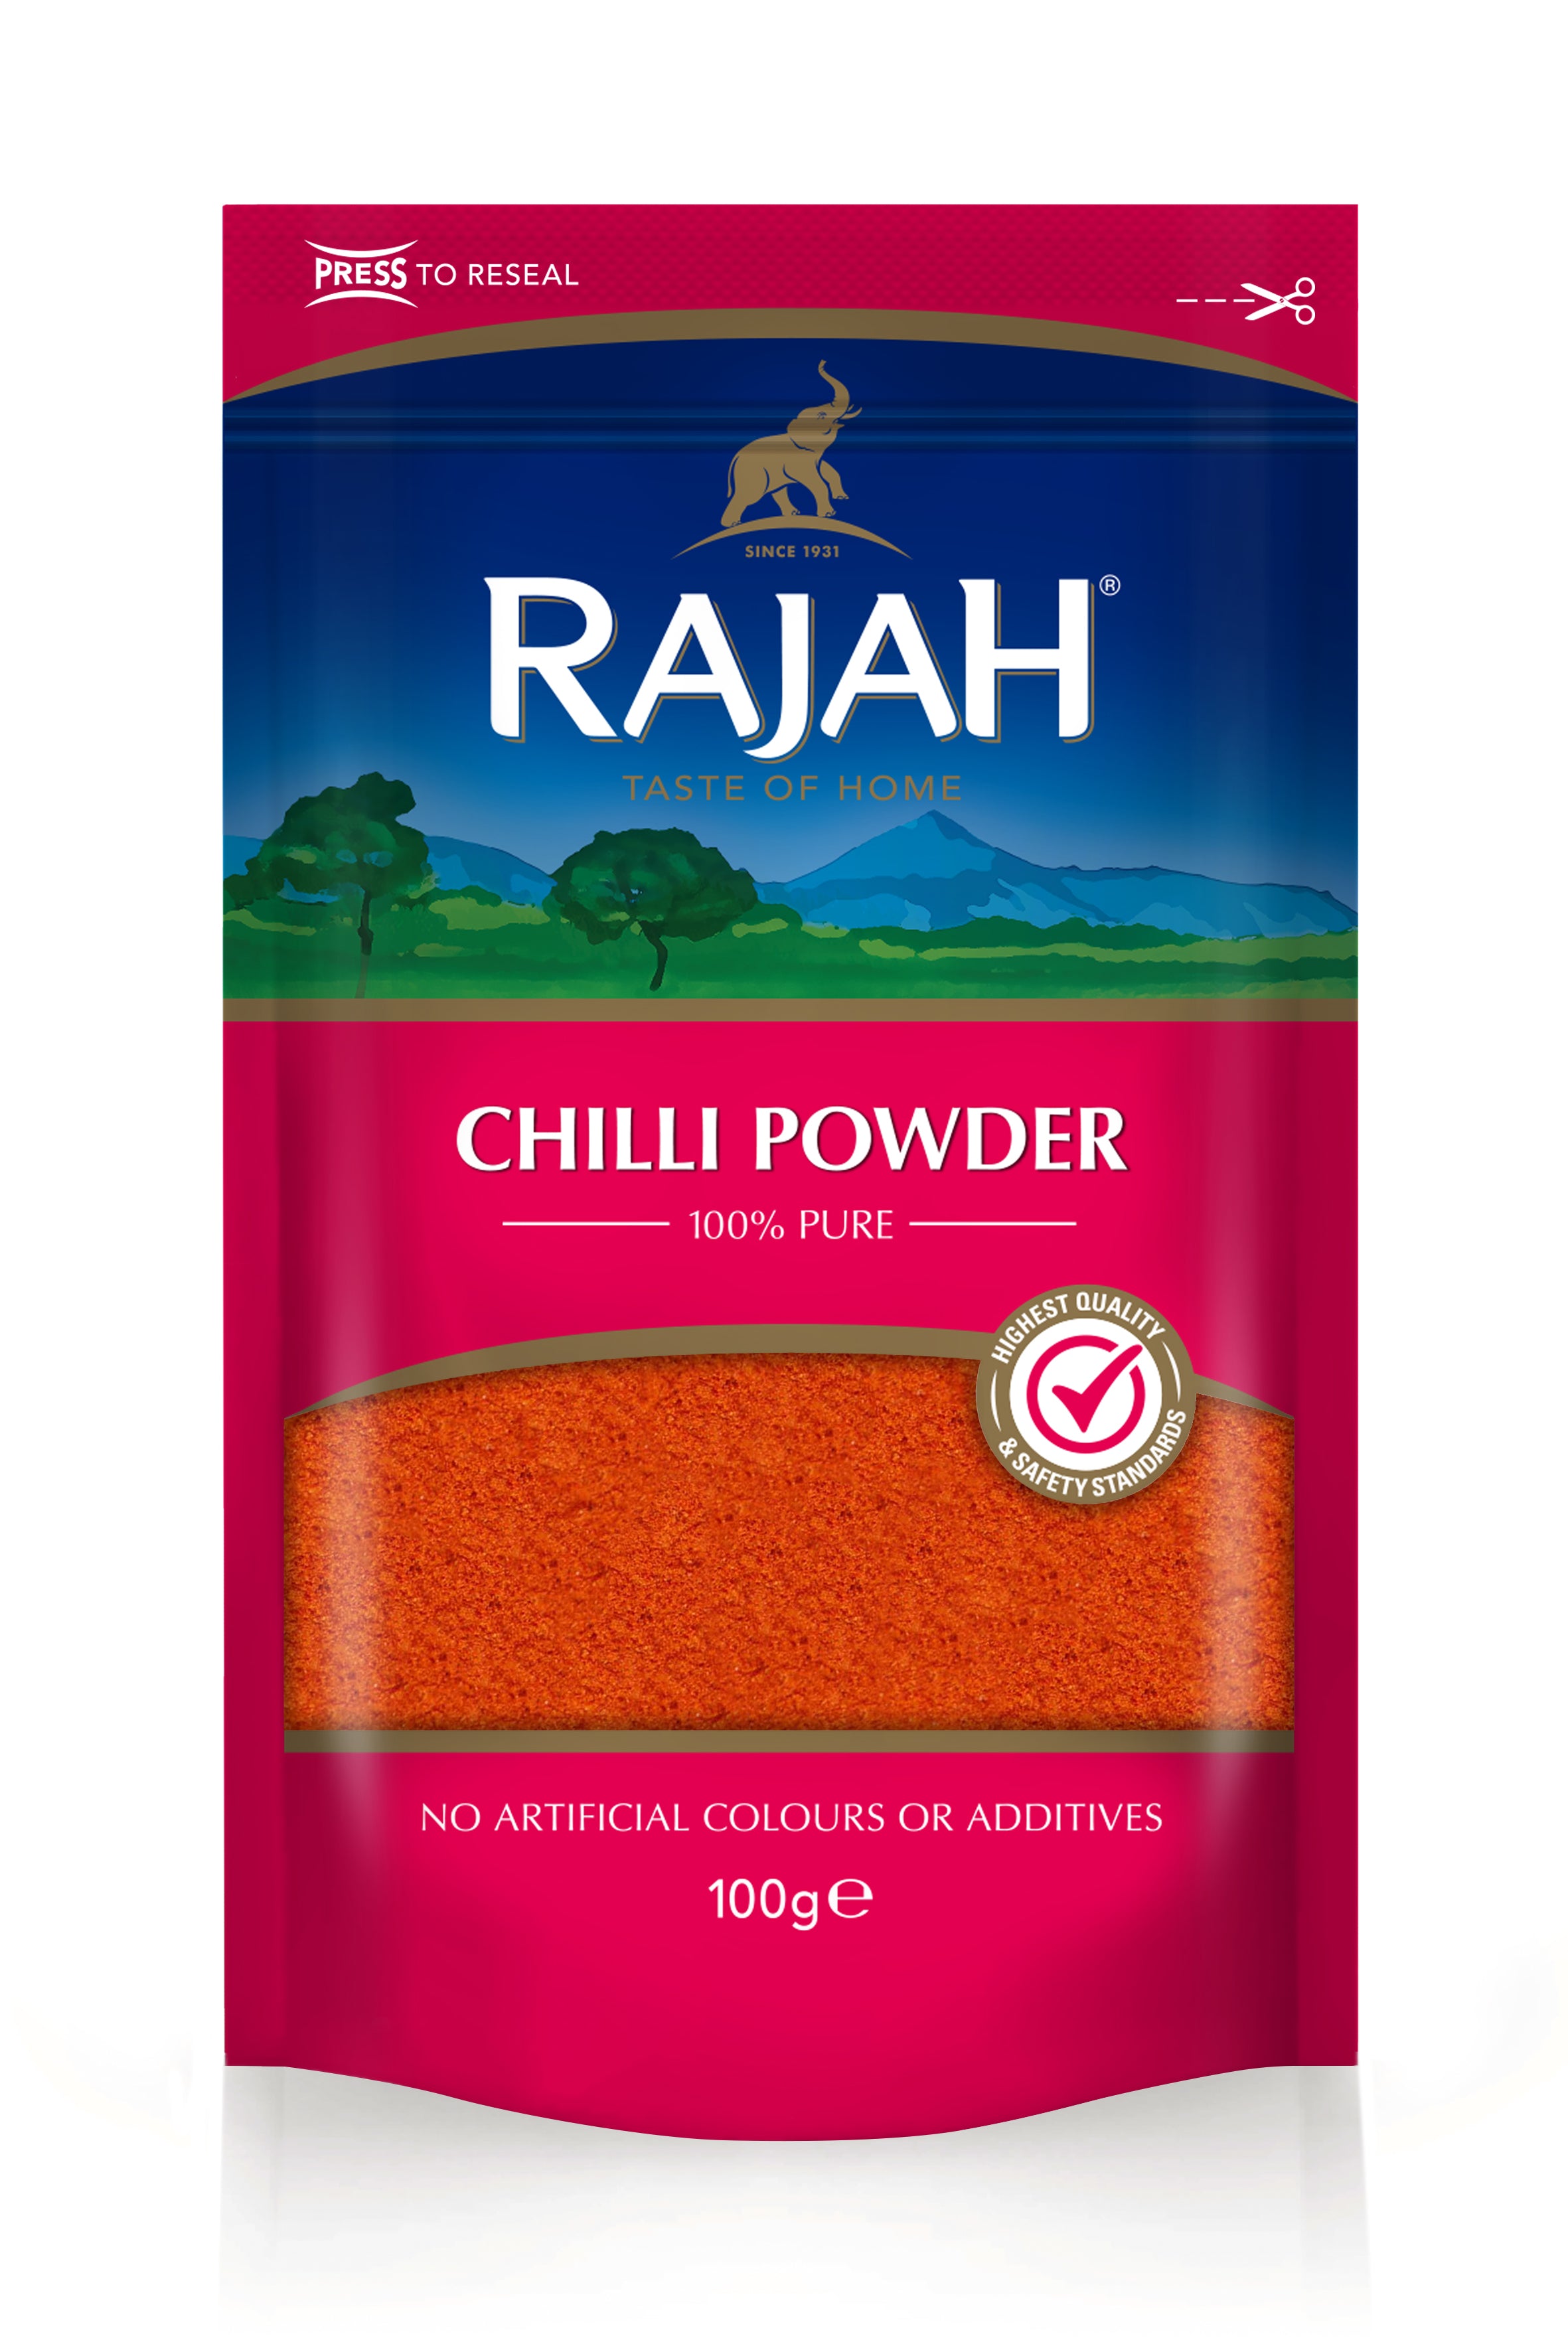 Rajah Chilli Powder - SaveCo Cash & Carry